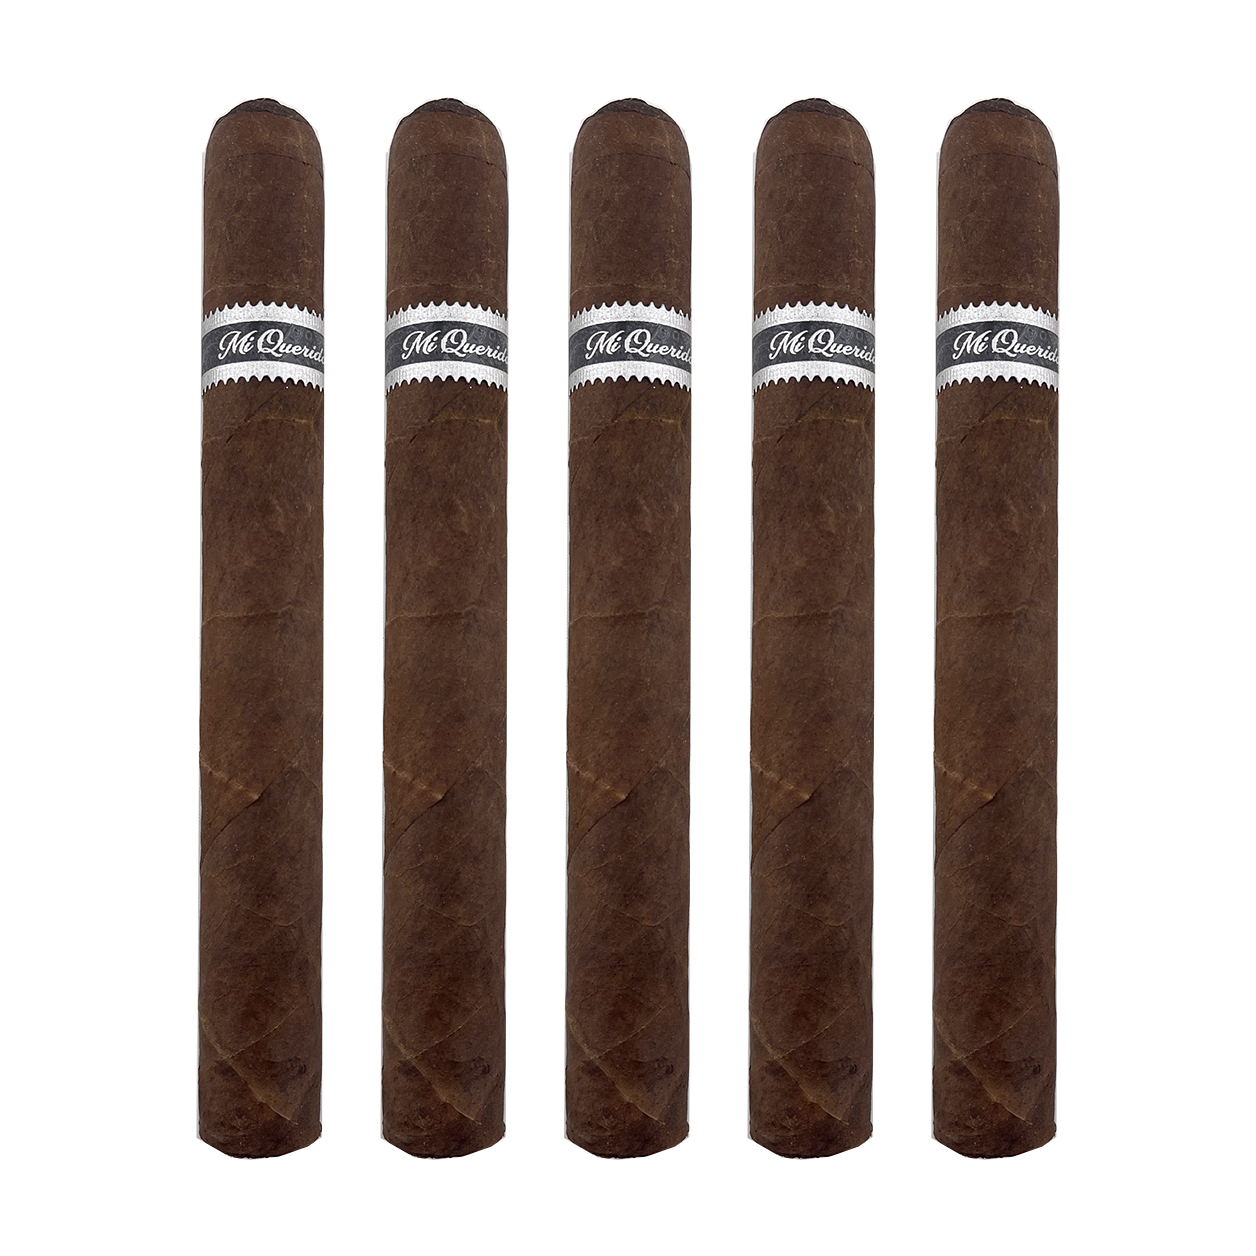 Mi Querida Black Sakakhan Cigar - 5 Pack